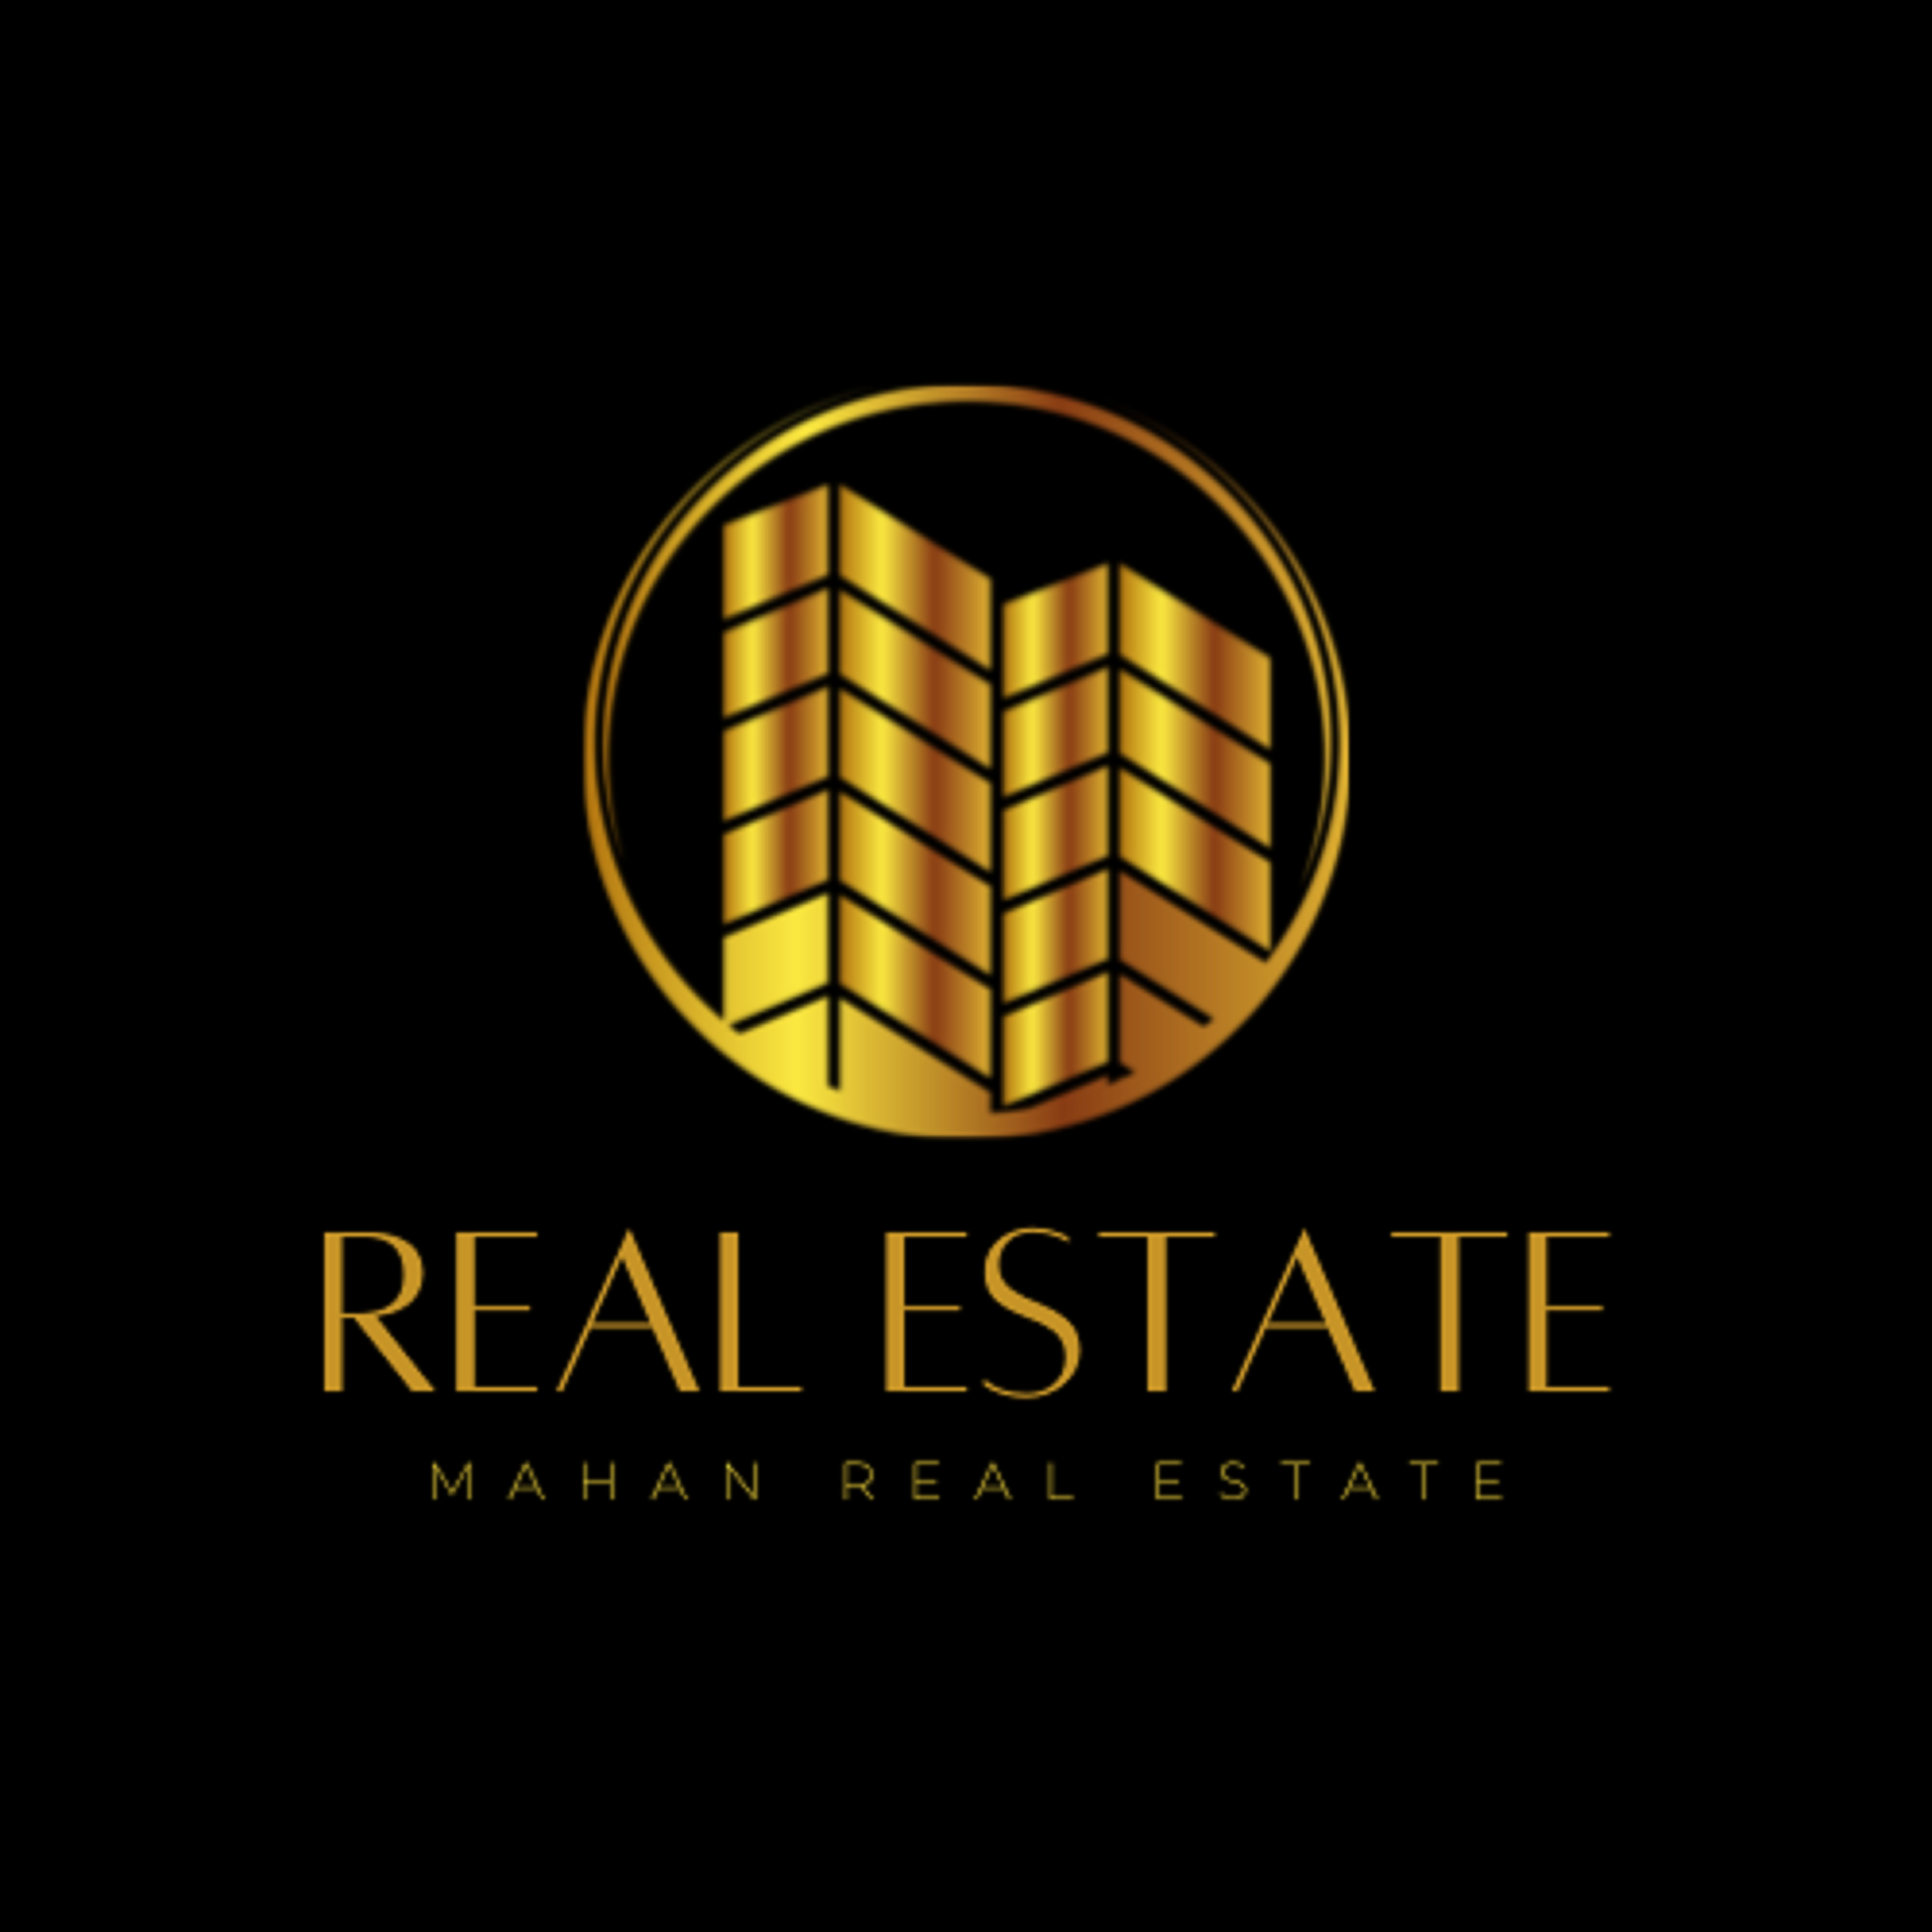 Mahan Real Estate